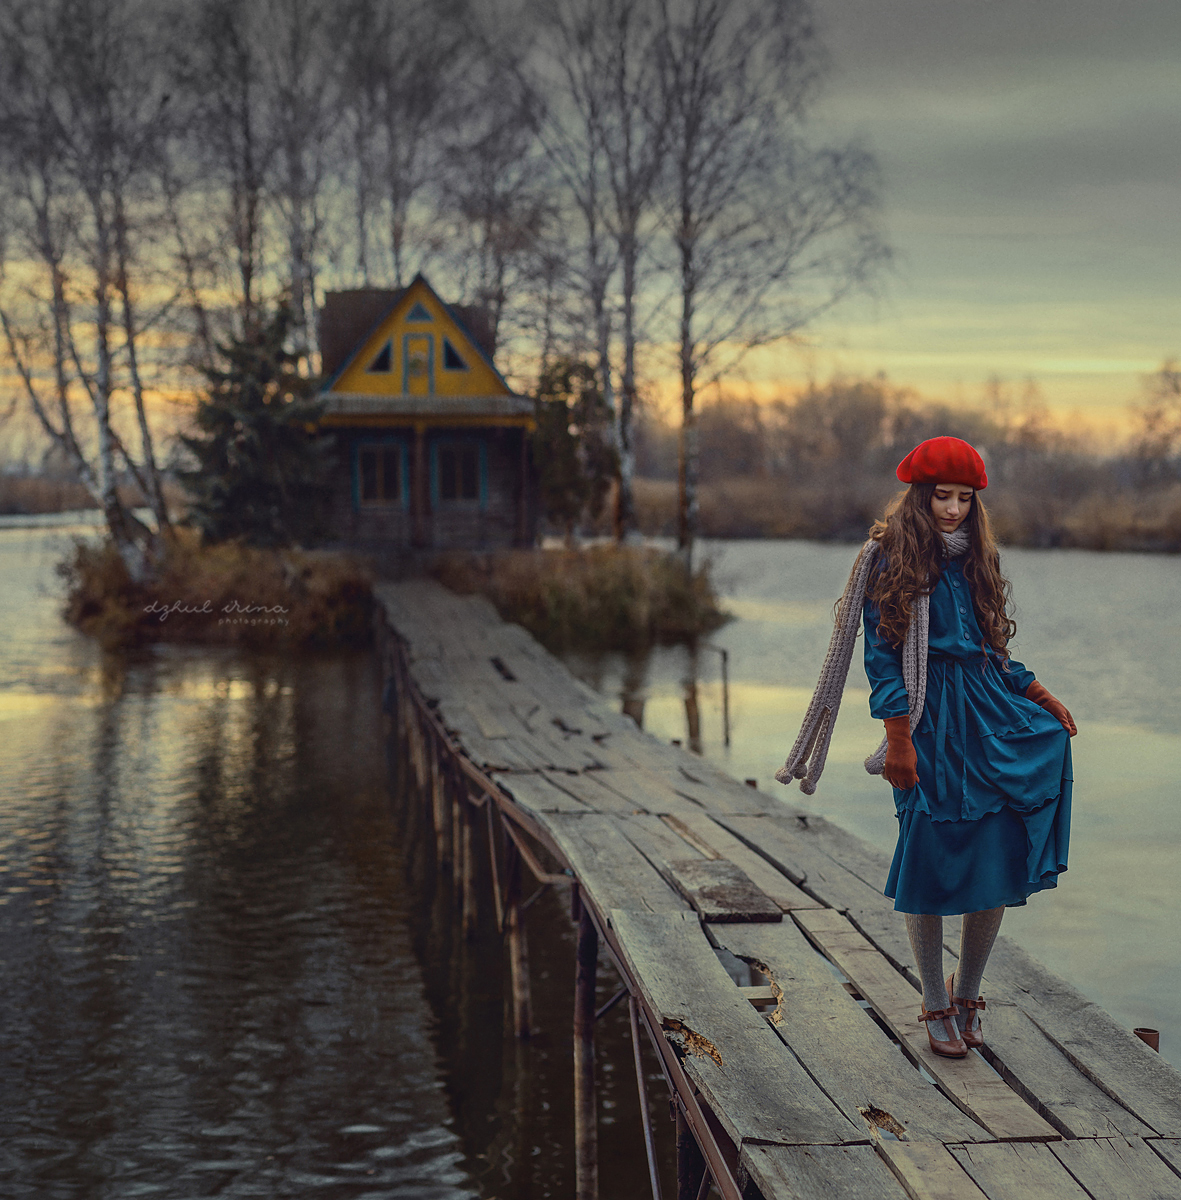 Фото Девушка в синем платье и красном берете стоит на мосту, ведущему к дому в окружении воды. Фотограф Ирина Джуль